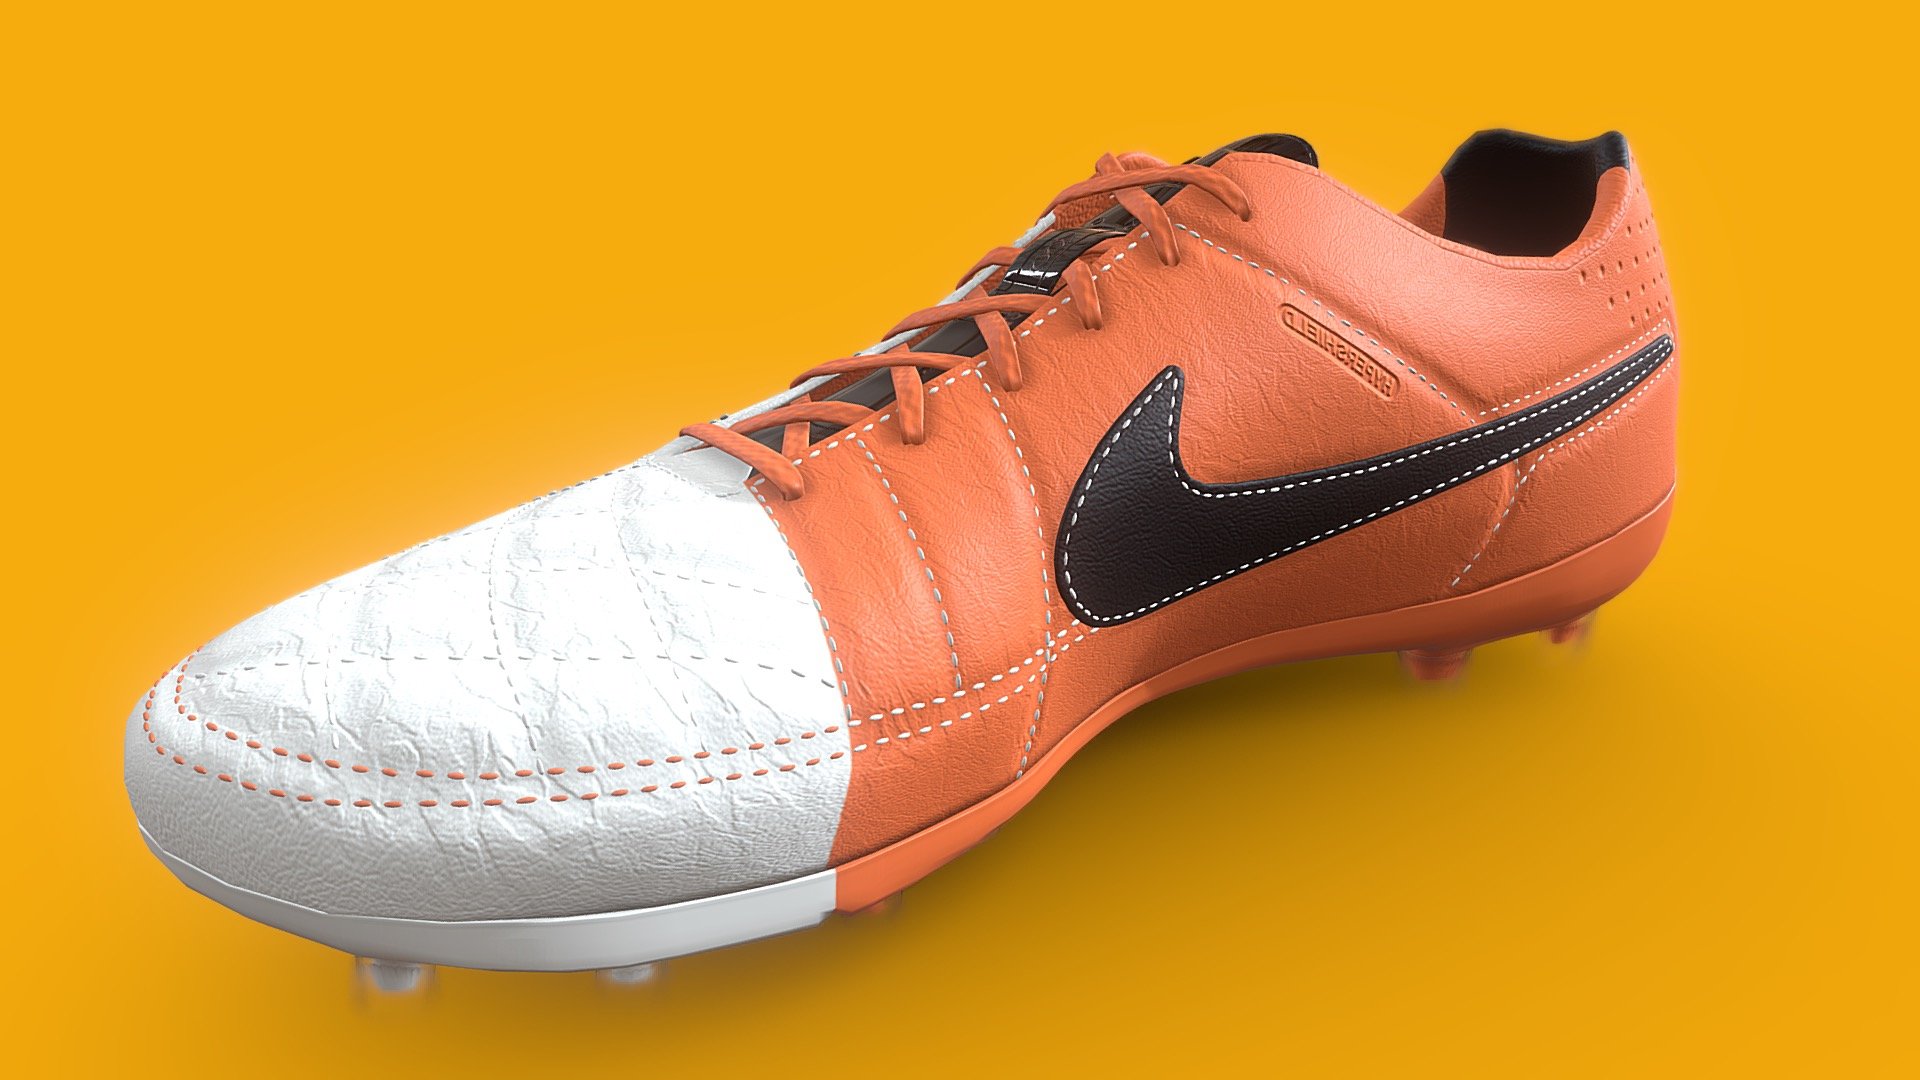 Soccer shoes - Nike Tiempo - Soccer shoes - Nike Tiempo - 3D model by David Young (@David_Young) 3d model